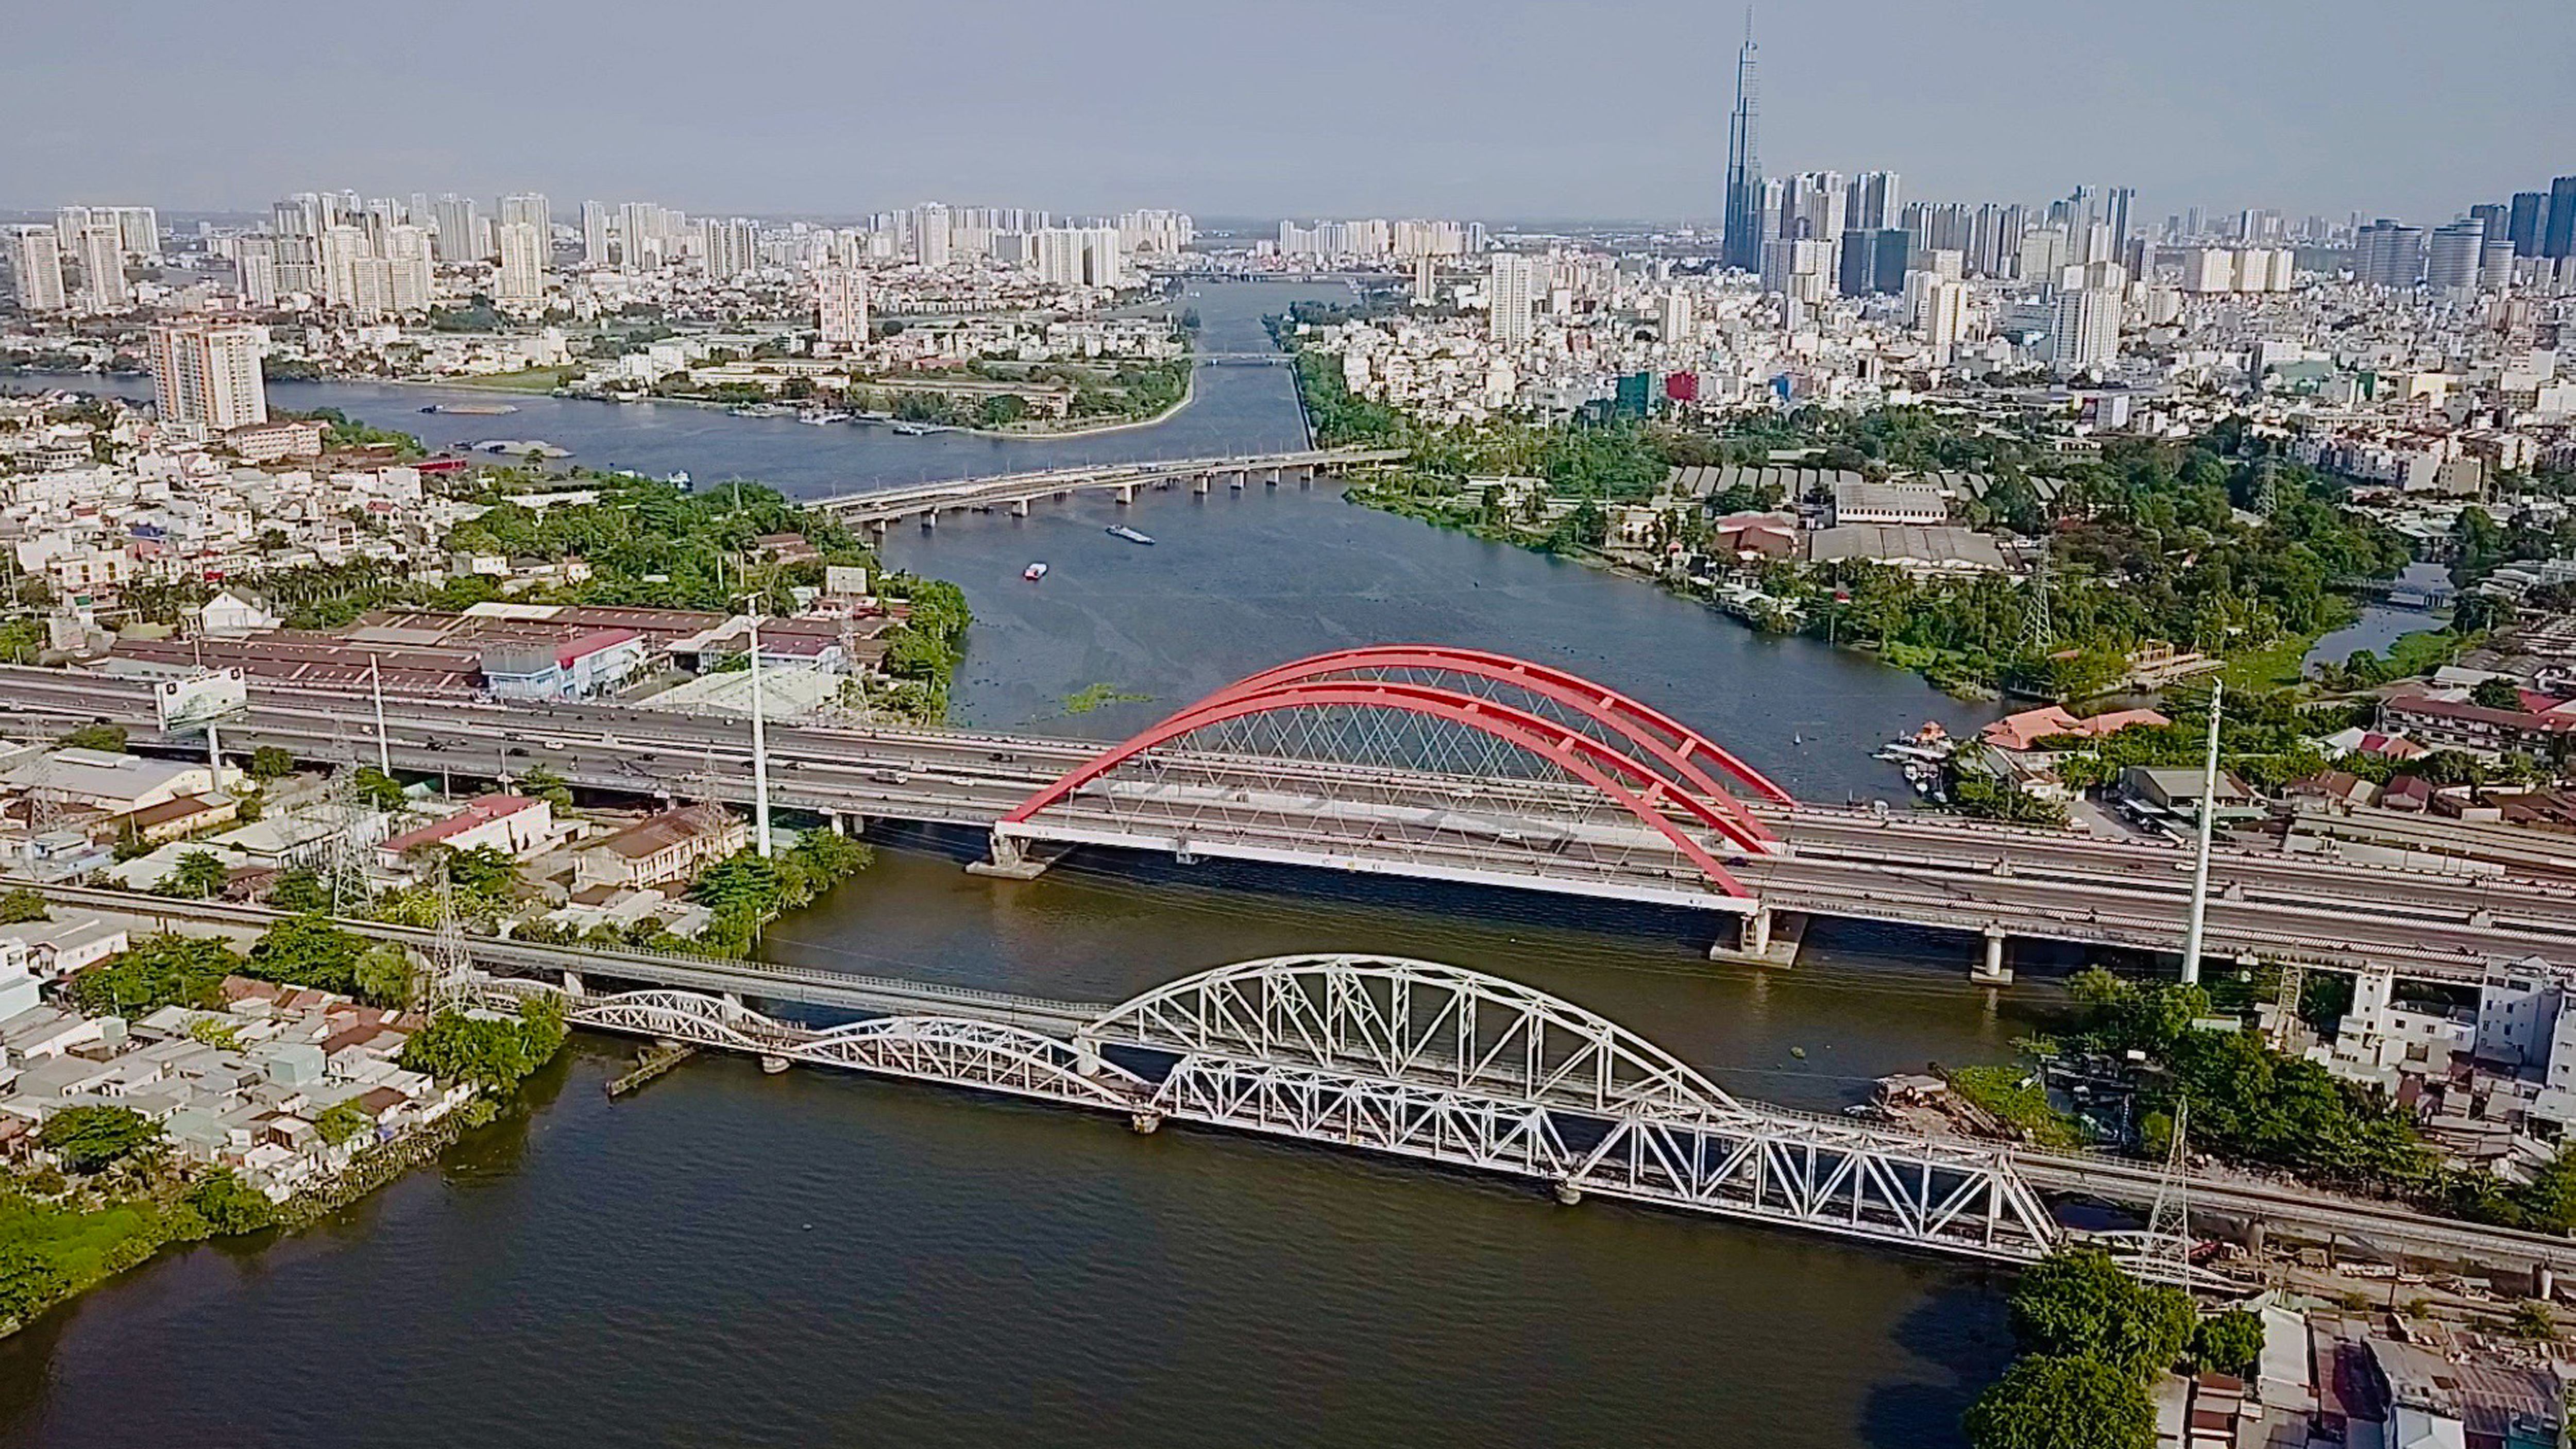 Việc tháo dỡ cầu Bình Lợi, thay bằng cầu Bình Lợi mới để TPHCM kết nối các tỉnh Đông Nam Bộ bằng các loại vận tải thủy có trọng tải lớn